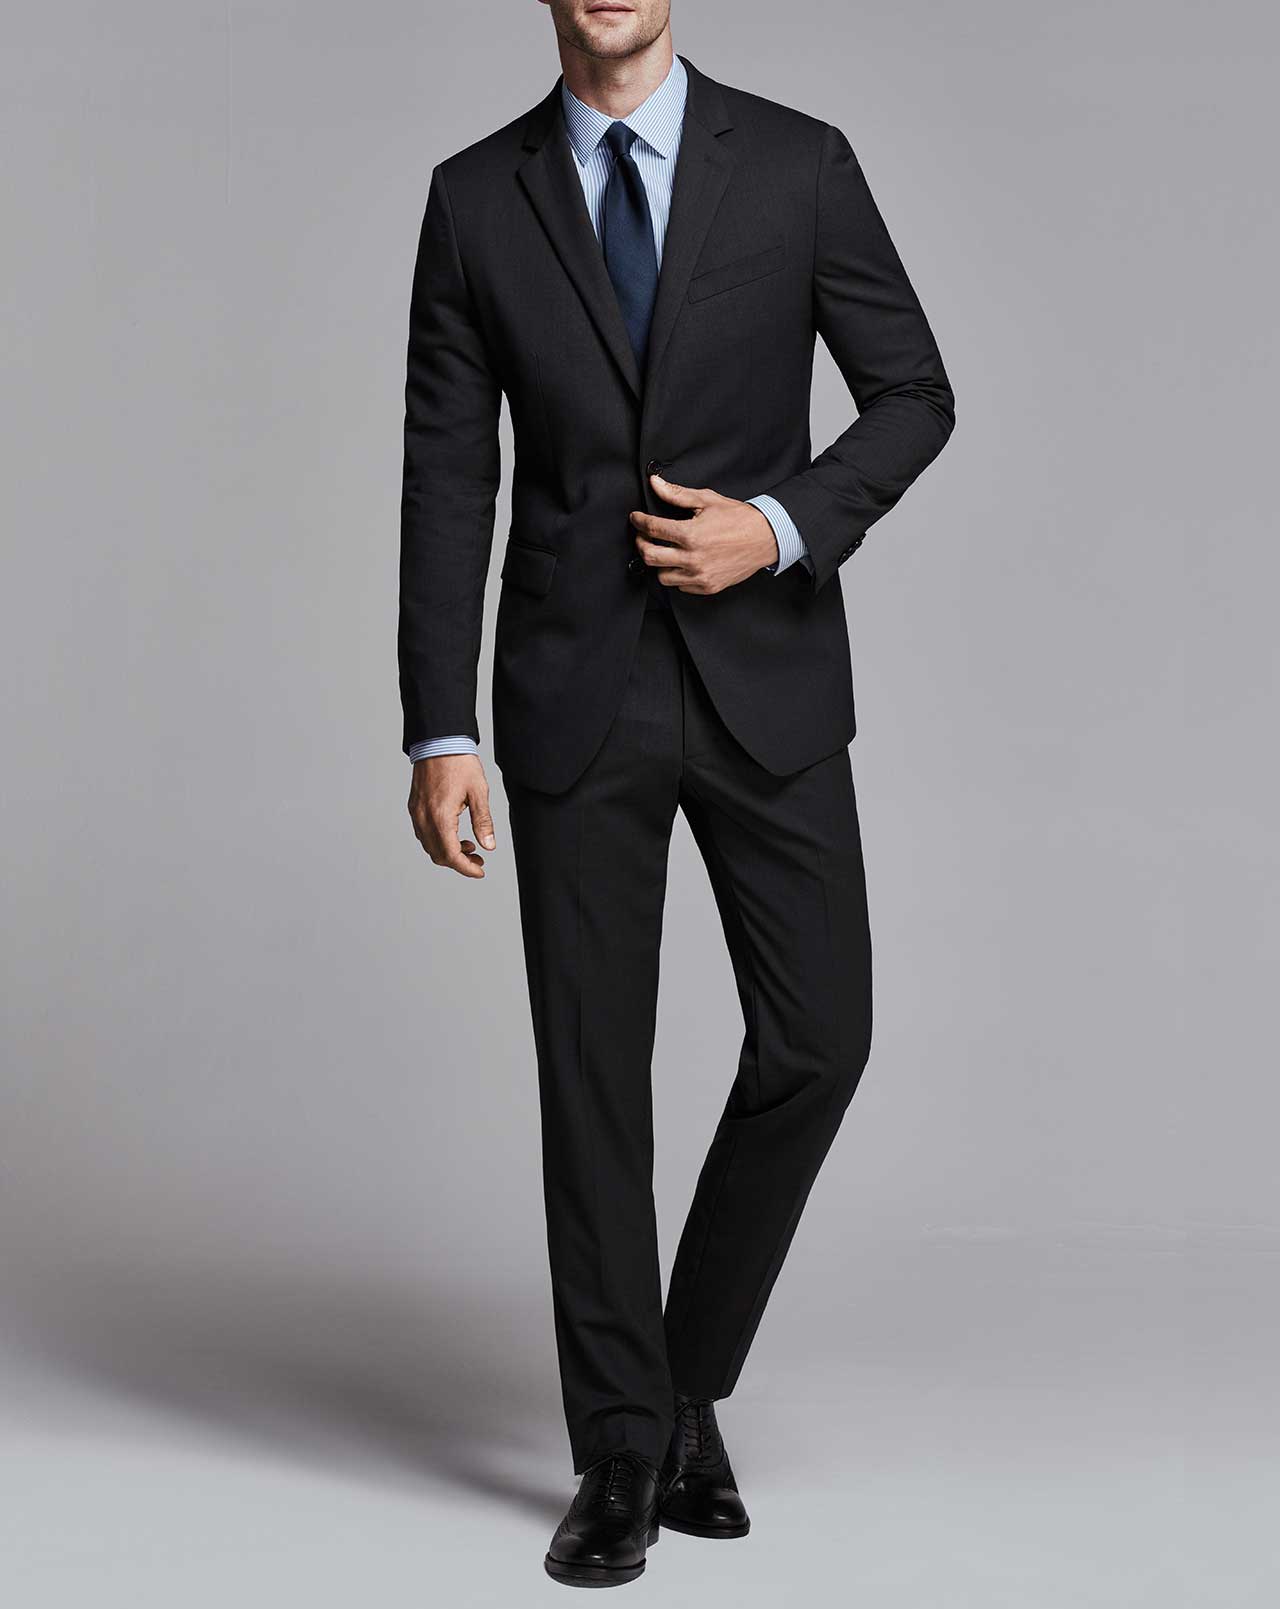 Fit Guide Men's Suits - Slim